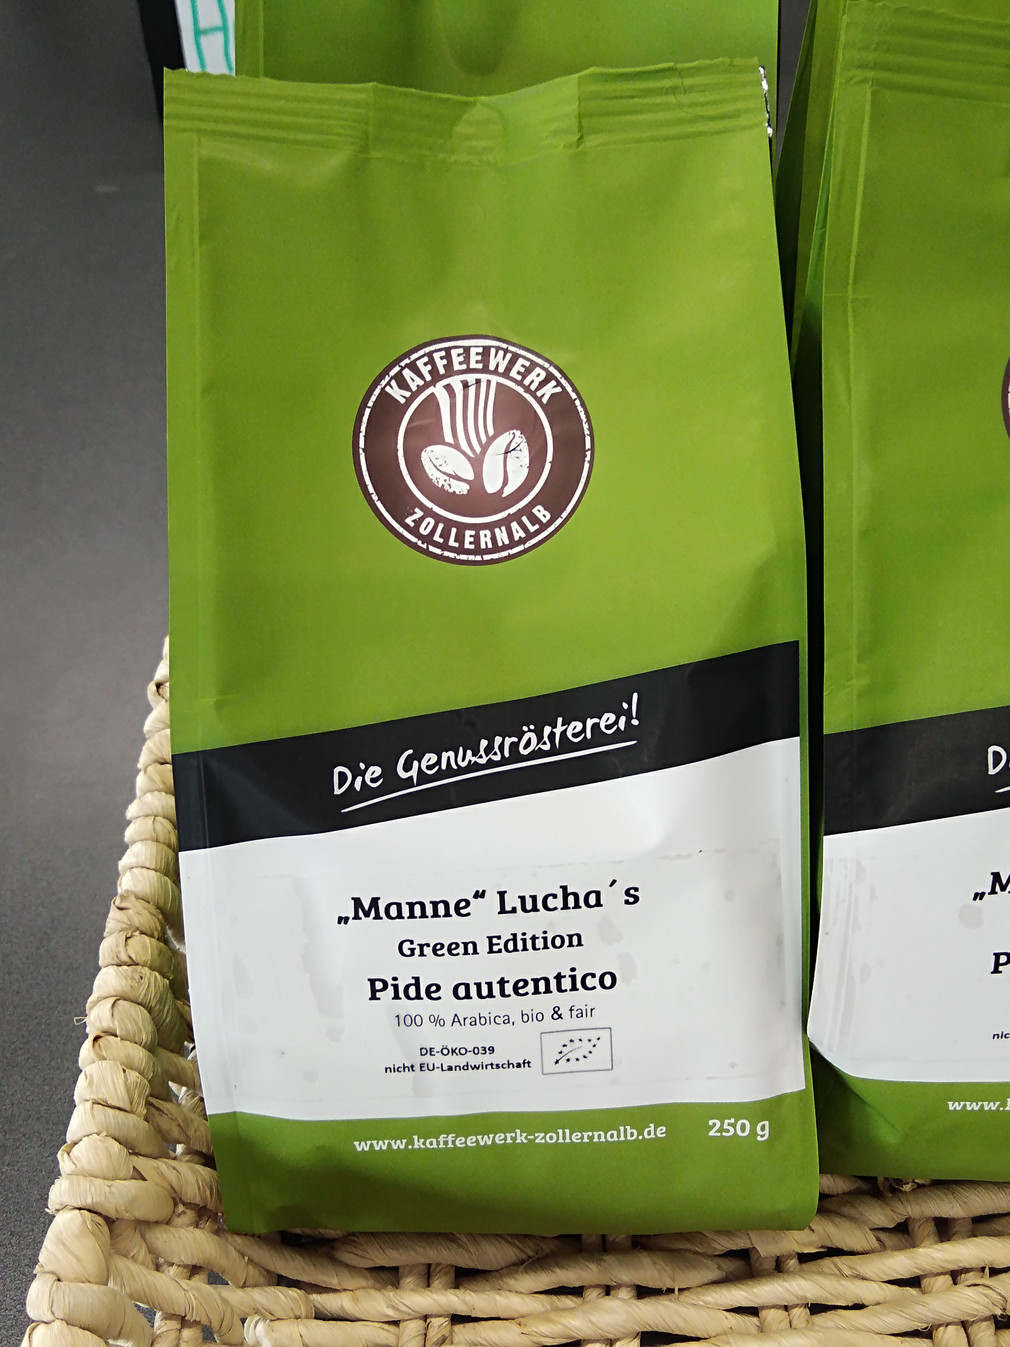 Packung der Kaffeesorte „Manne“ Lucha´s Green Edition Pide autentico